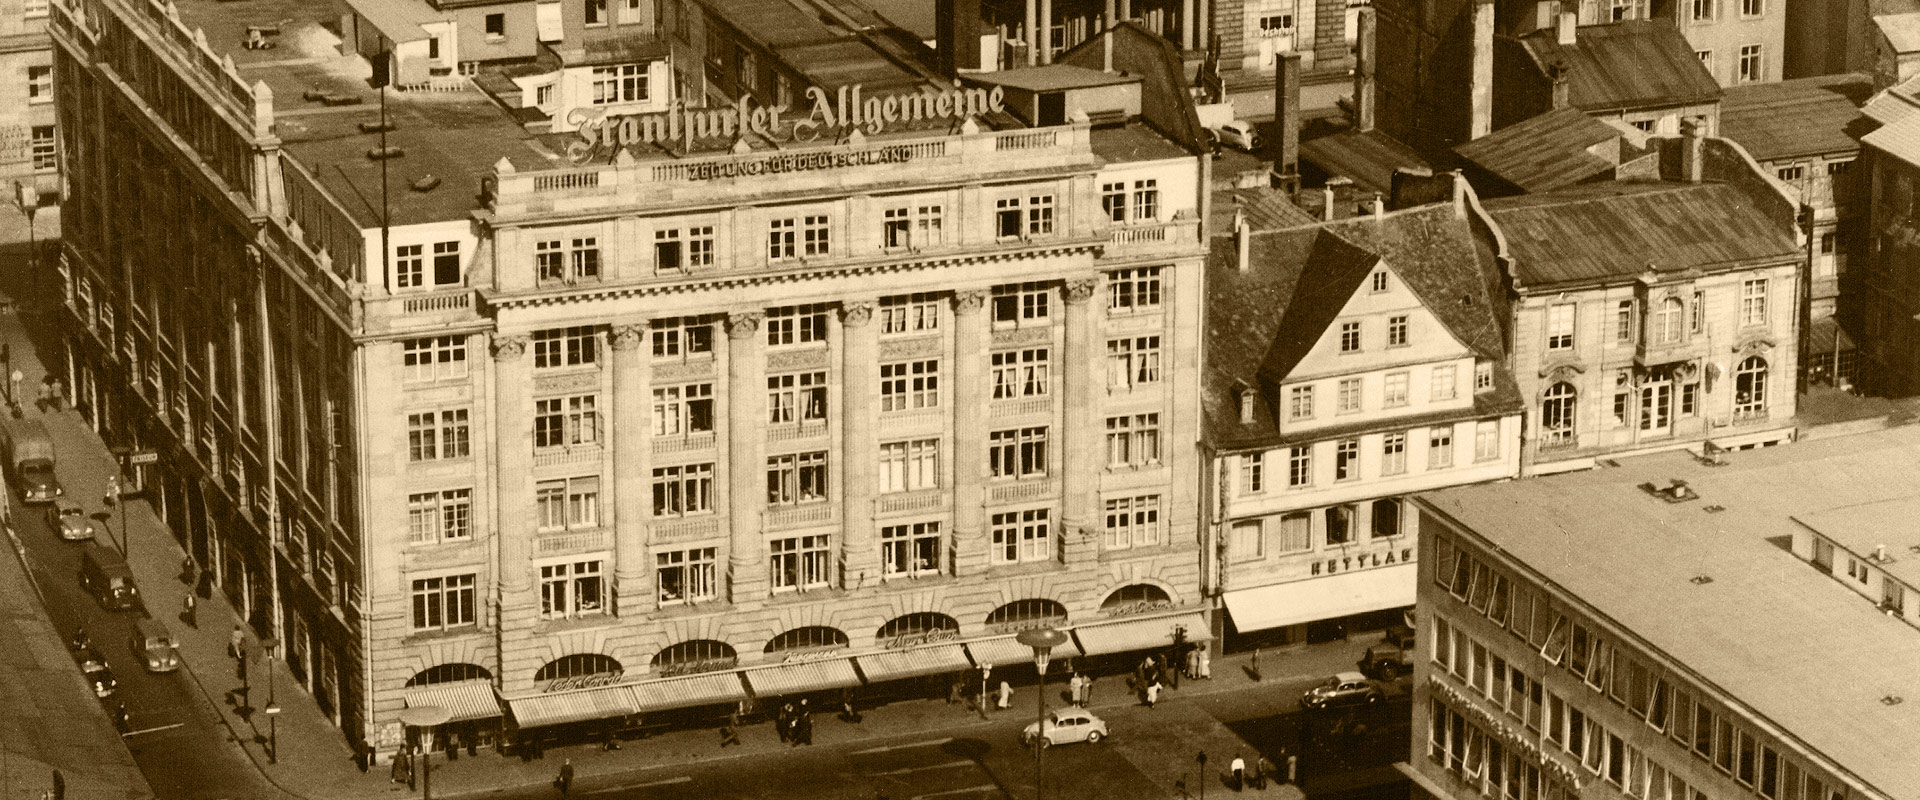 Luftaufnahme ehemaliges F.A.Z.-Gebäude in der Börsenstraße